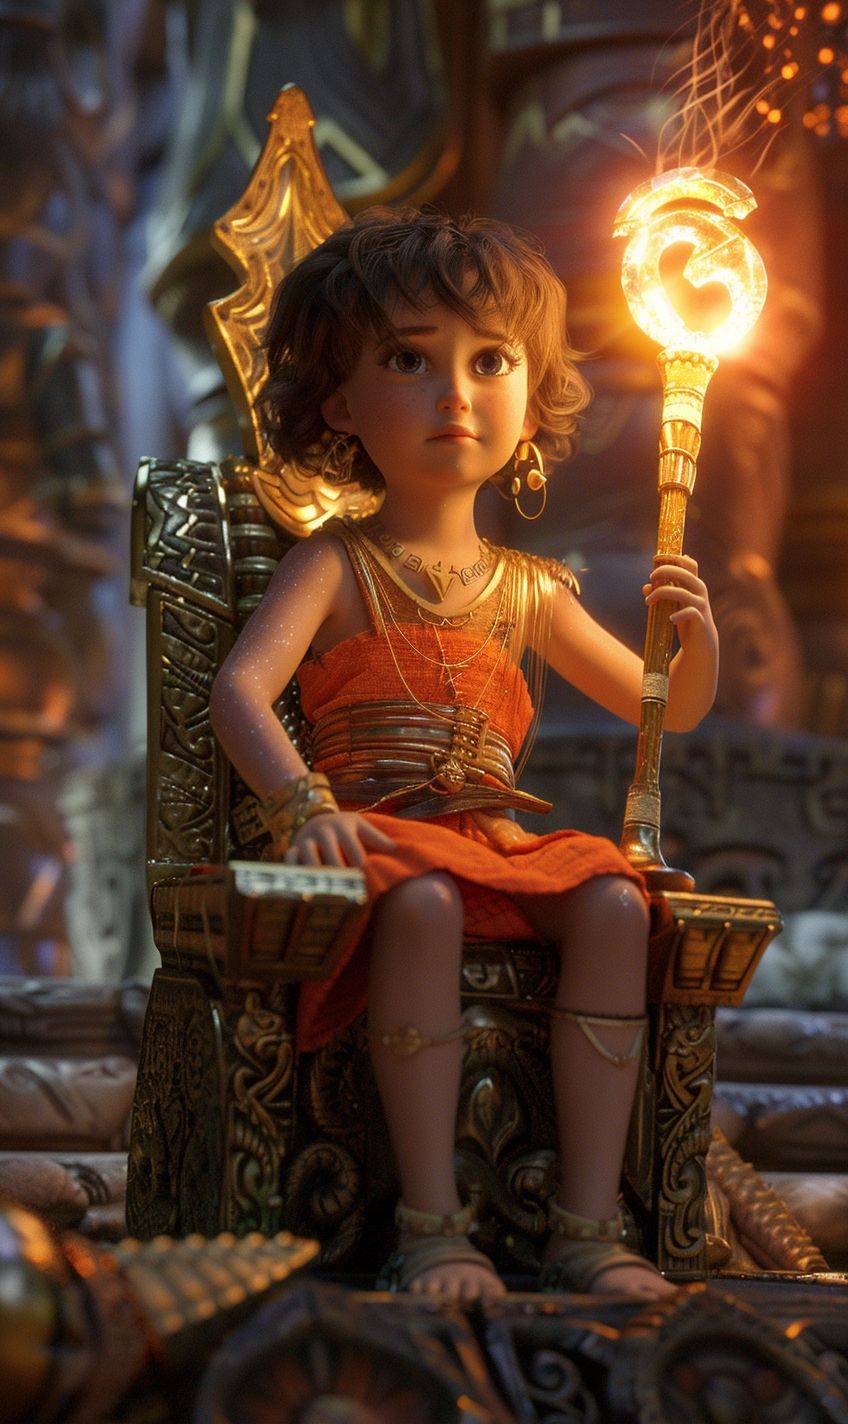 滑らかな茶色の髪をした3歳の女の子は、ポニーテールをせずに厳しい表情で古代の寺院の高い台の上に座り、手には魔法の光る杖を持って玉座に座っている。女の子は面白くてかわいらしい雰囲気がある。ピクサーの童話スタイルで。